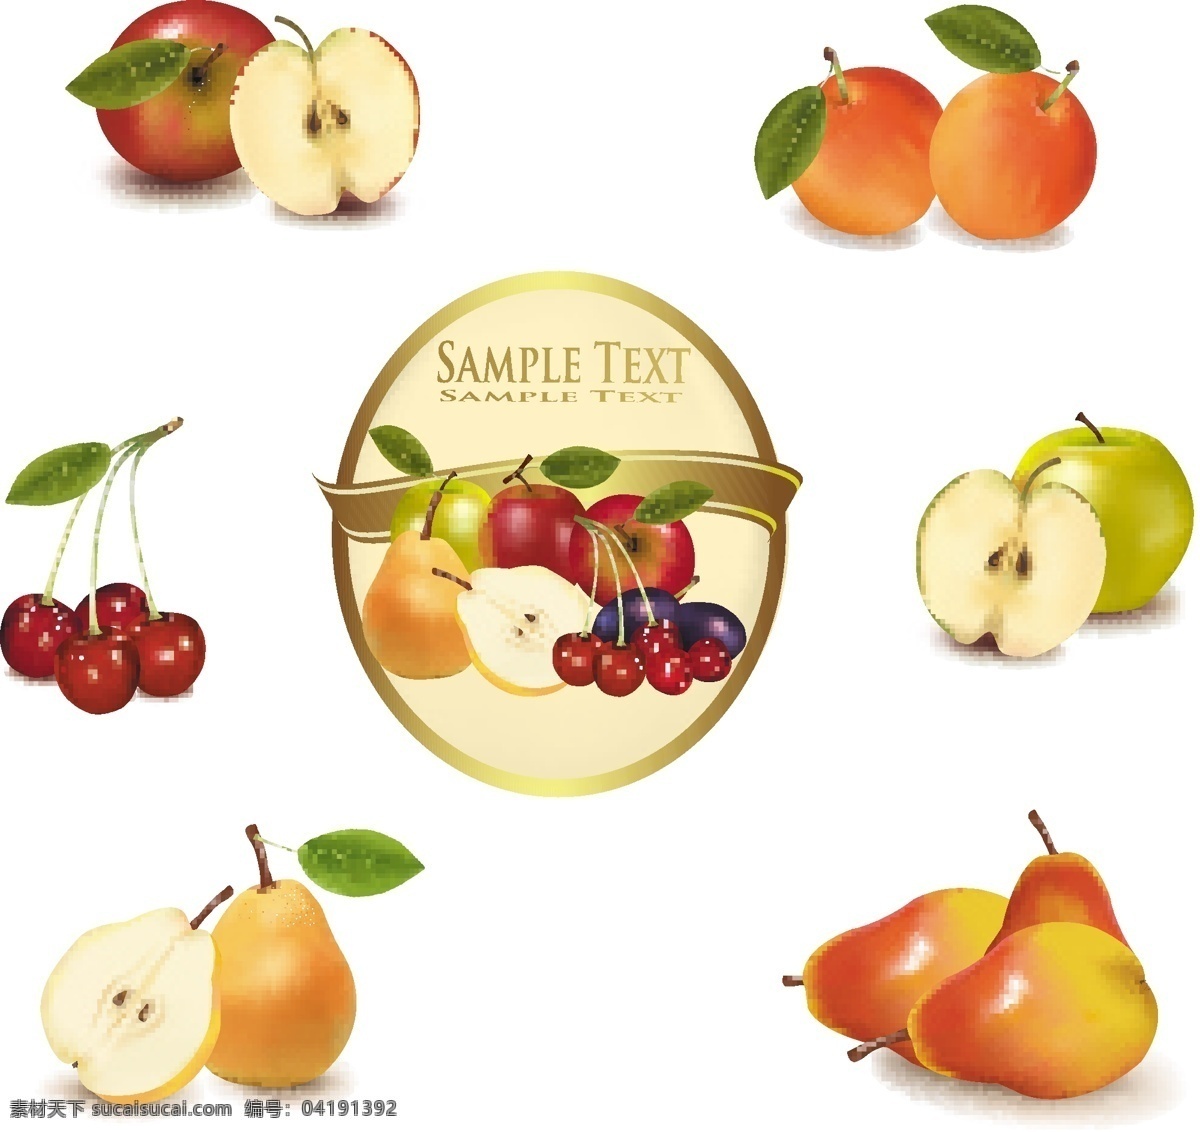 水果设计素材 苹果 梨 樱桃 水果 水果设计 水果素材 矢量水果 水果图标 新鲜水果 矢量素材 餐饮美食 生活百科 白色